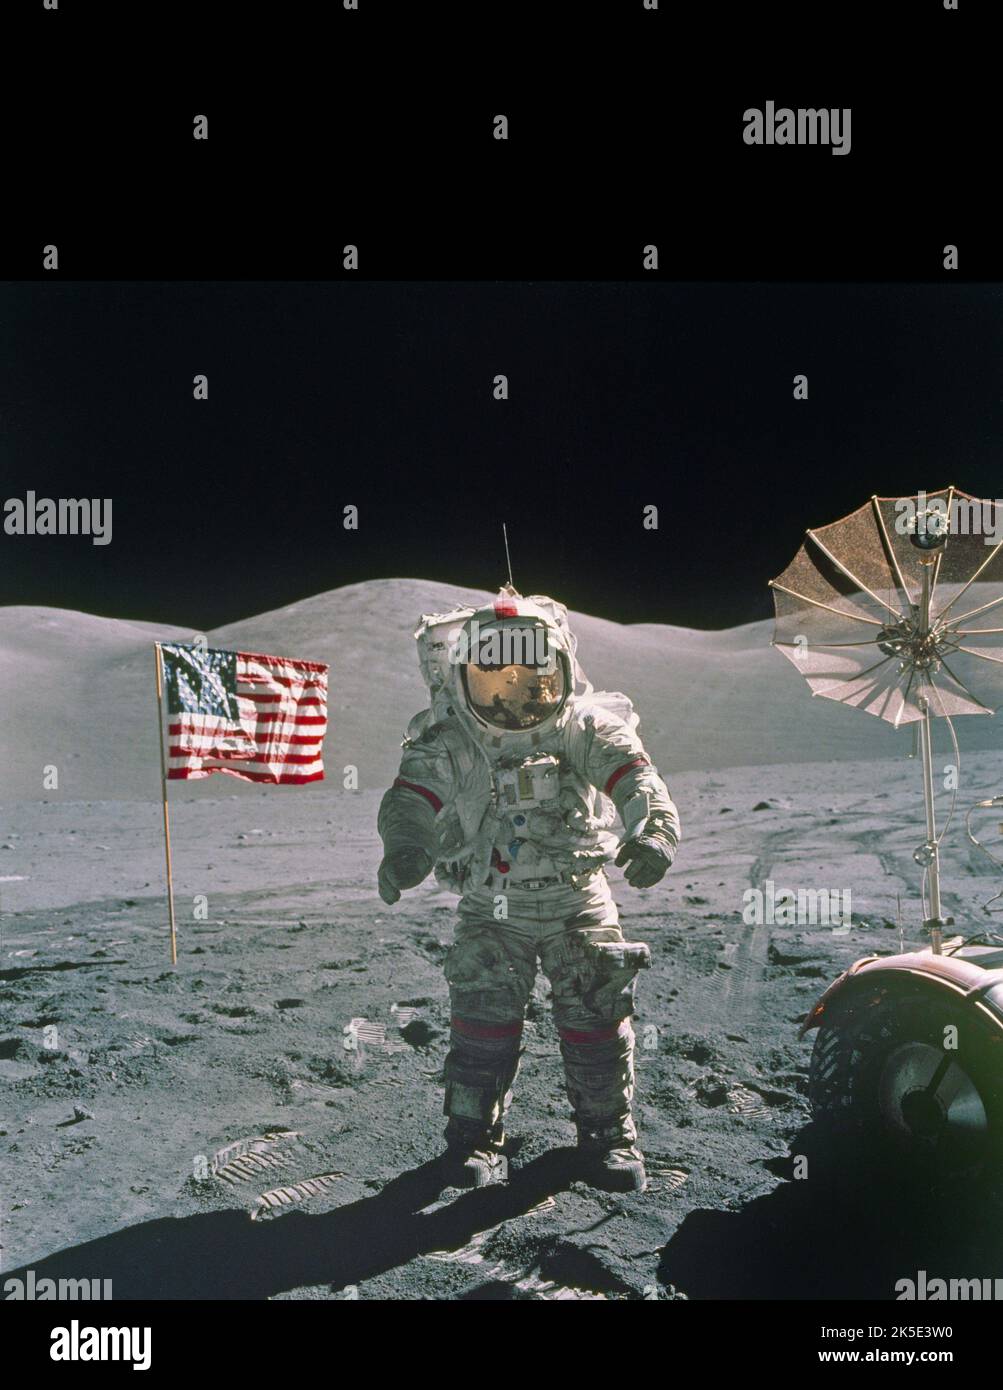 Apollo 17 markierte den Abschluss der Mondexpedition des Programms. Am 7. Dezember 1972 nach Mitternacht vom Kennedy Space Center abheben und am 11. Dezember auf der Mondoberfläche niederlegen. Die Besatzung verbrachte fast 75 Stunden auf der Mondoberfläche, führte fast 22 Stunden an extravehicular activities (EVAs) durch und reiste fast 19 Meilen im Lunar Roving Vehicle (LRV). Dieses Foto, das während der zweiten EVA am 12. Dezember 1972 aufgenommen wurde, zeigt Astronaut Gene Cernan, der in der Nähe des LRV steht. Ein einzigartiges, optimiertes NASA-Bild (mit zusätzlichem schwarzen vertikalen Raum über dem ursprünglichen quadratischen Bild; Fadenkreuz-Entfernung): Quelle: NASA Stockfoto